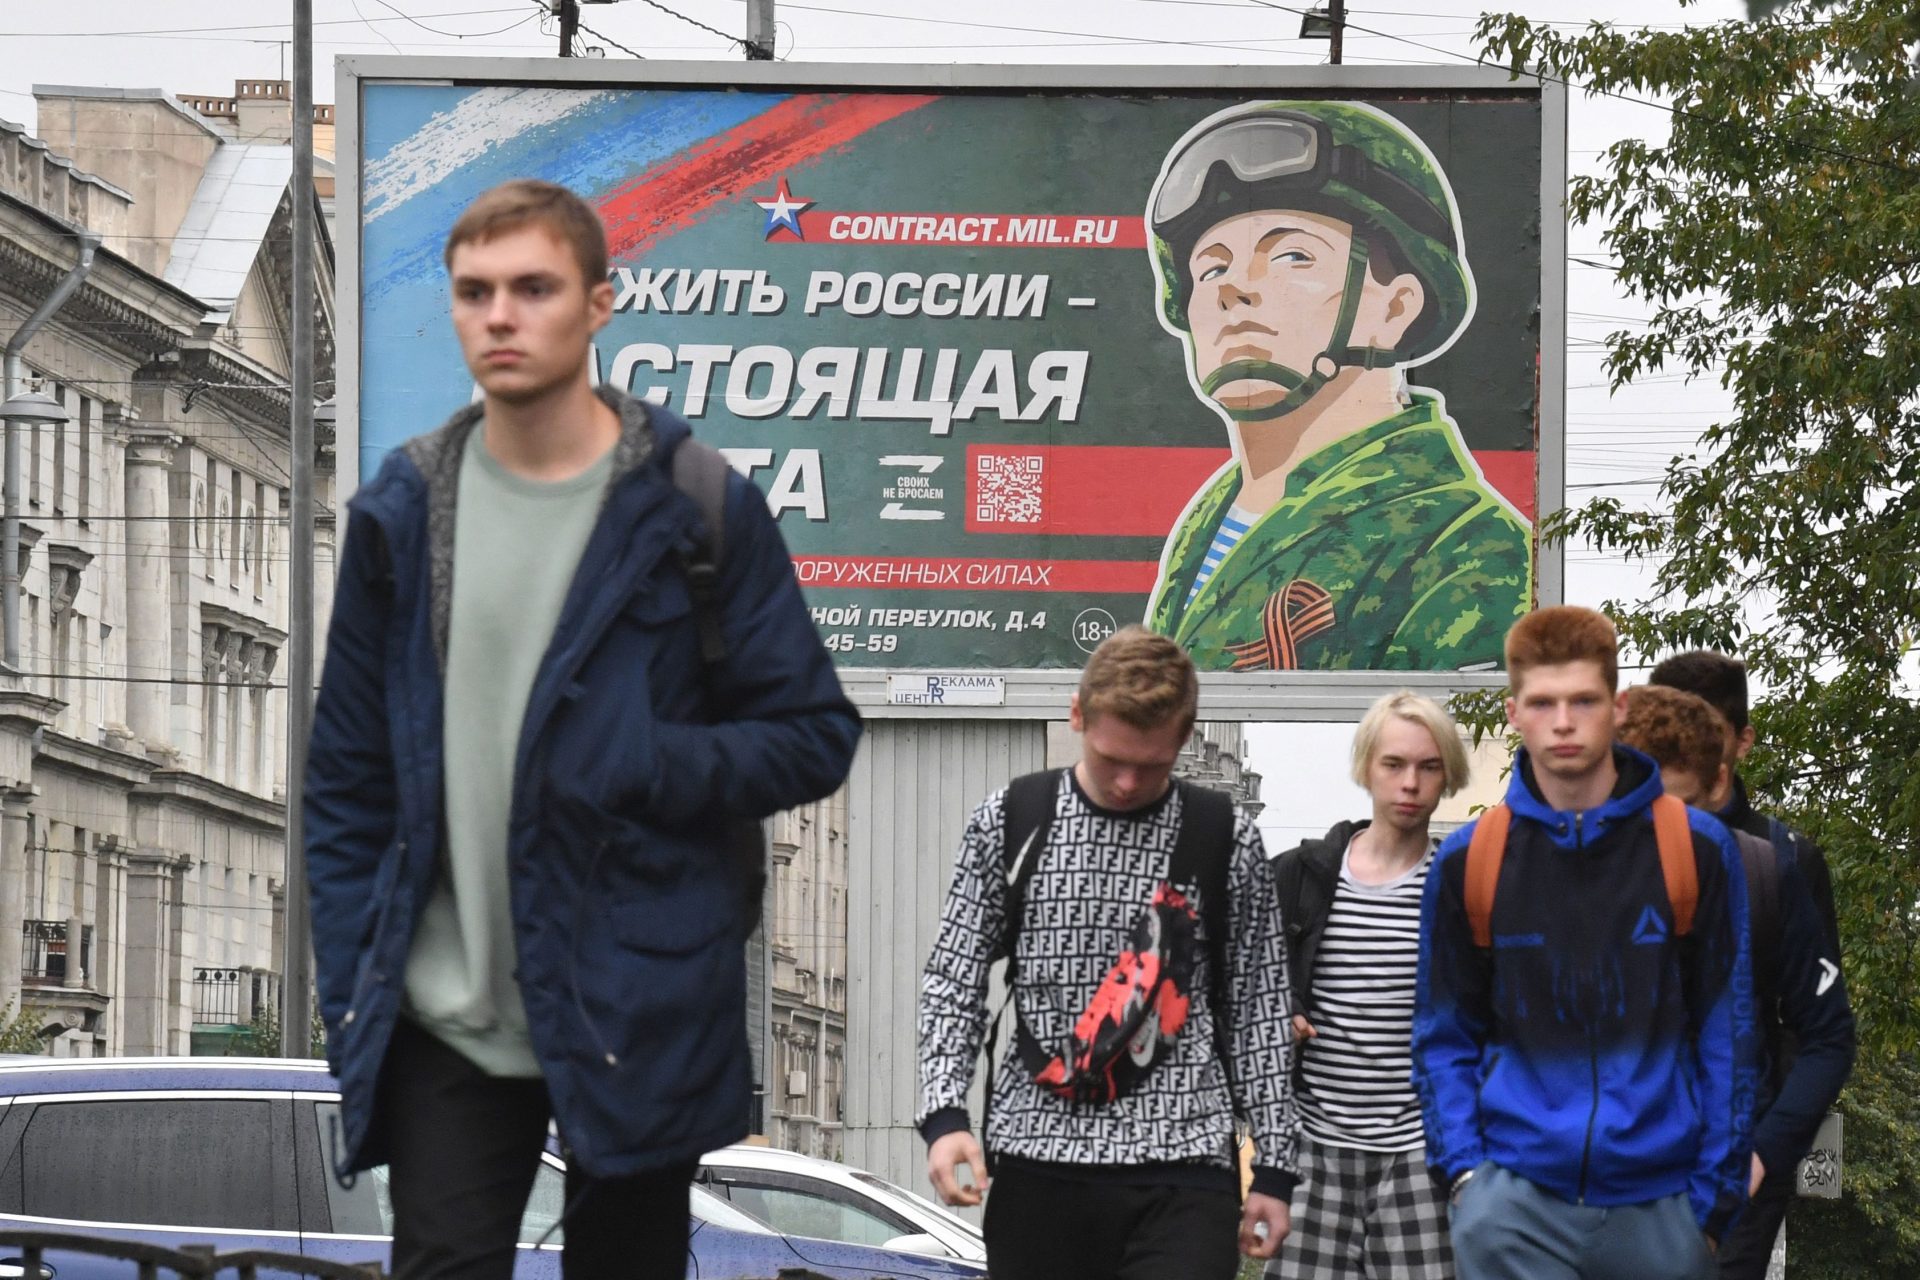 Kurzmeldung: Das Leben in Russland ist nicht einfach